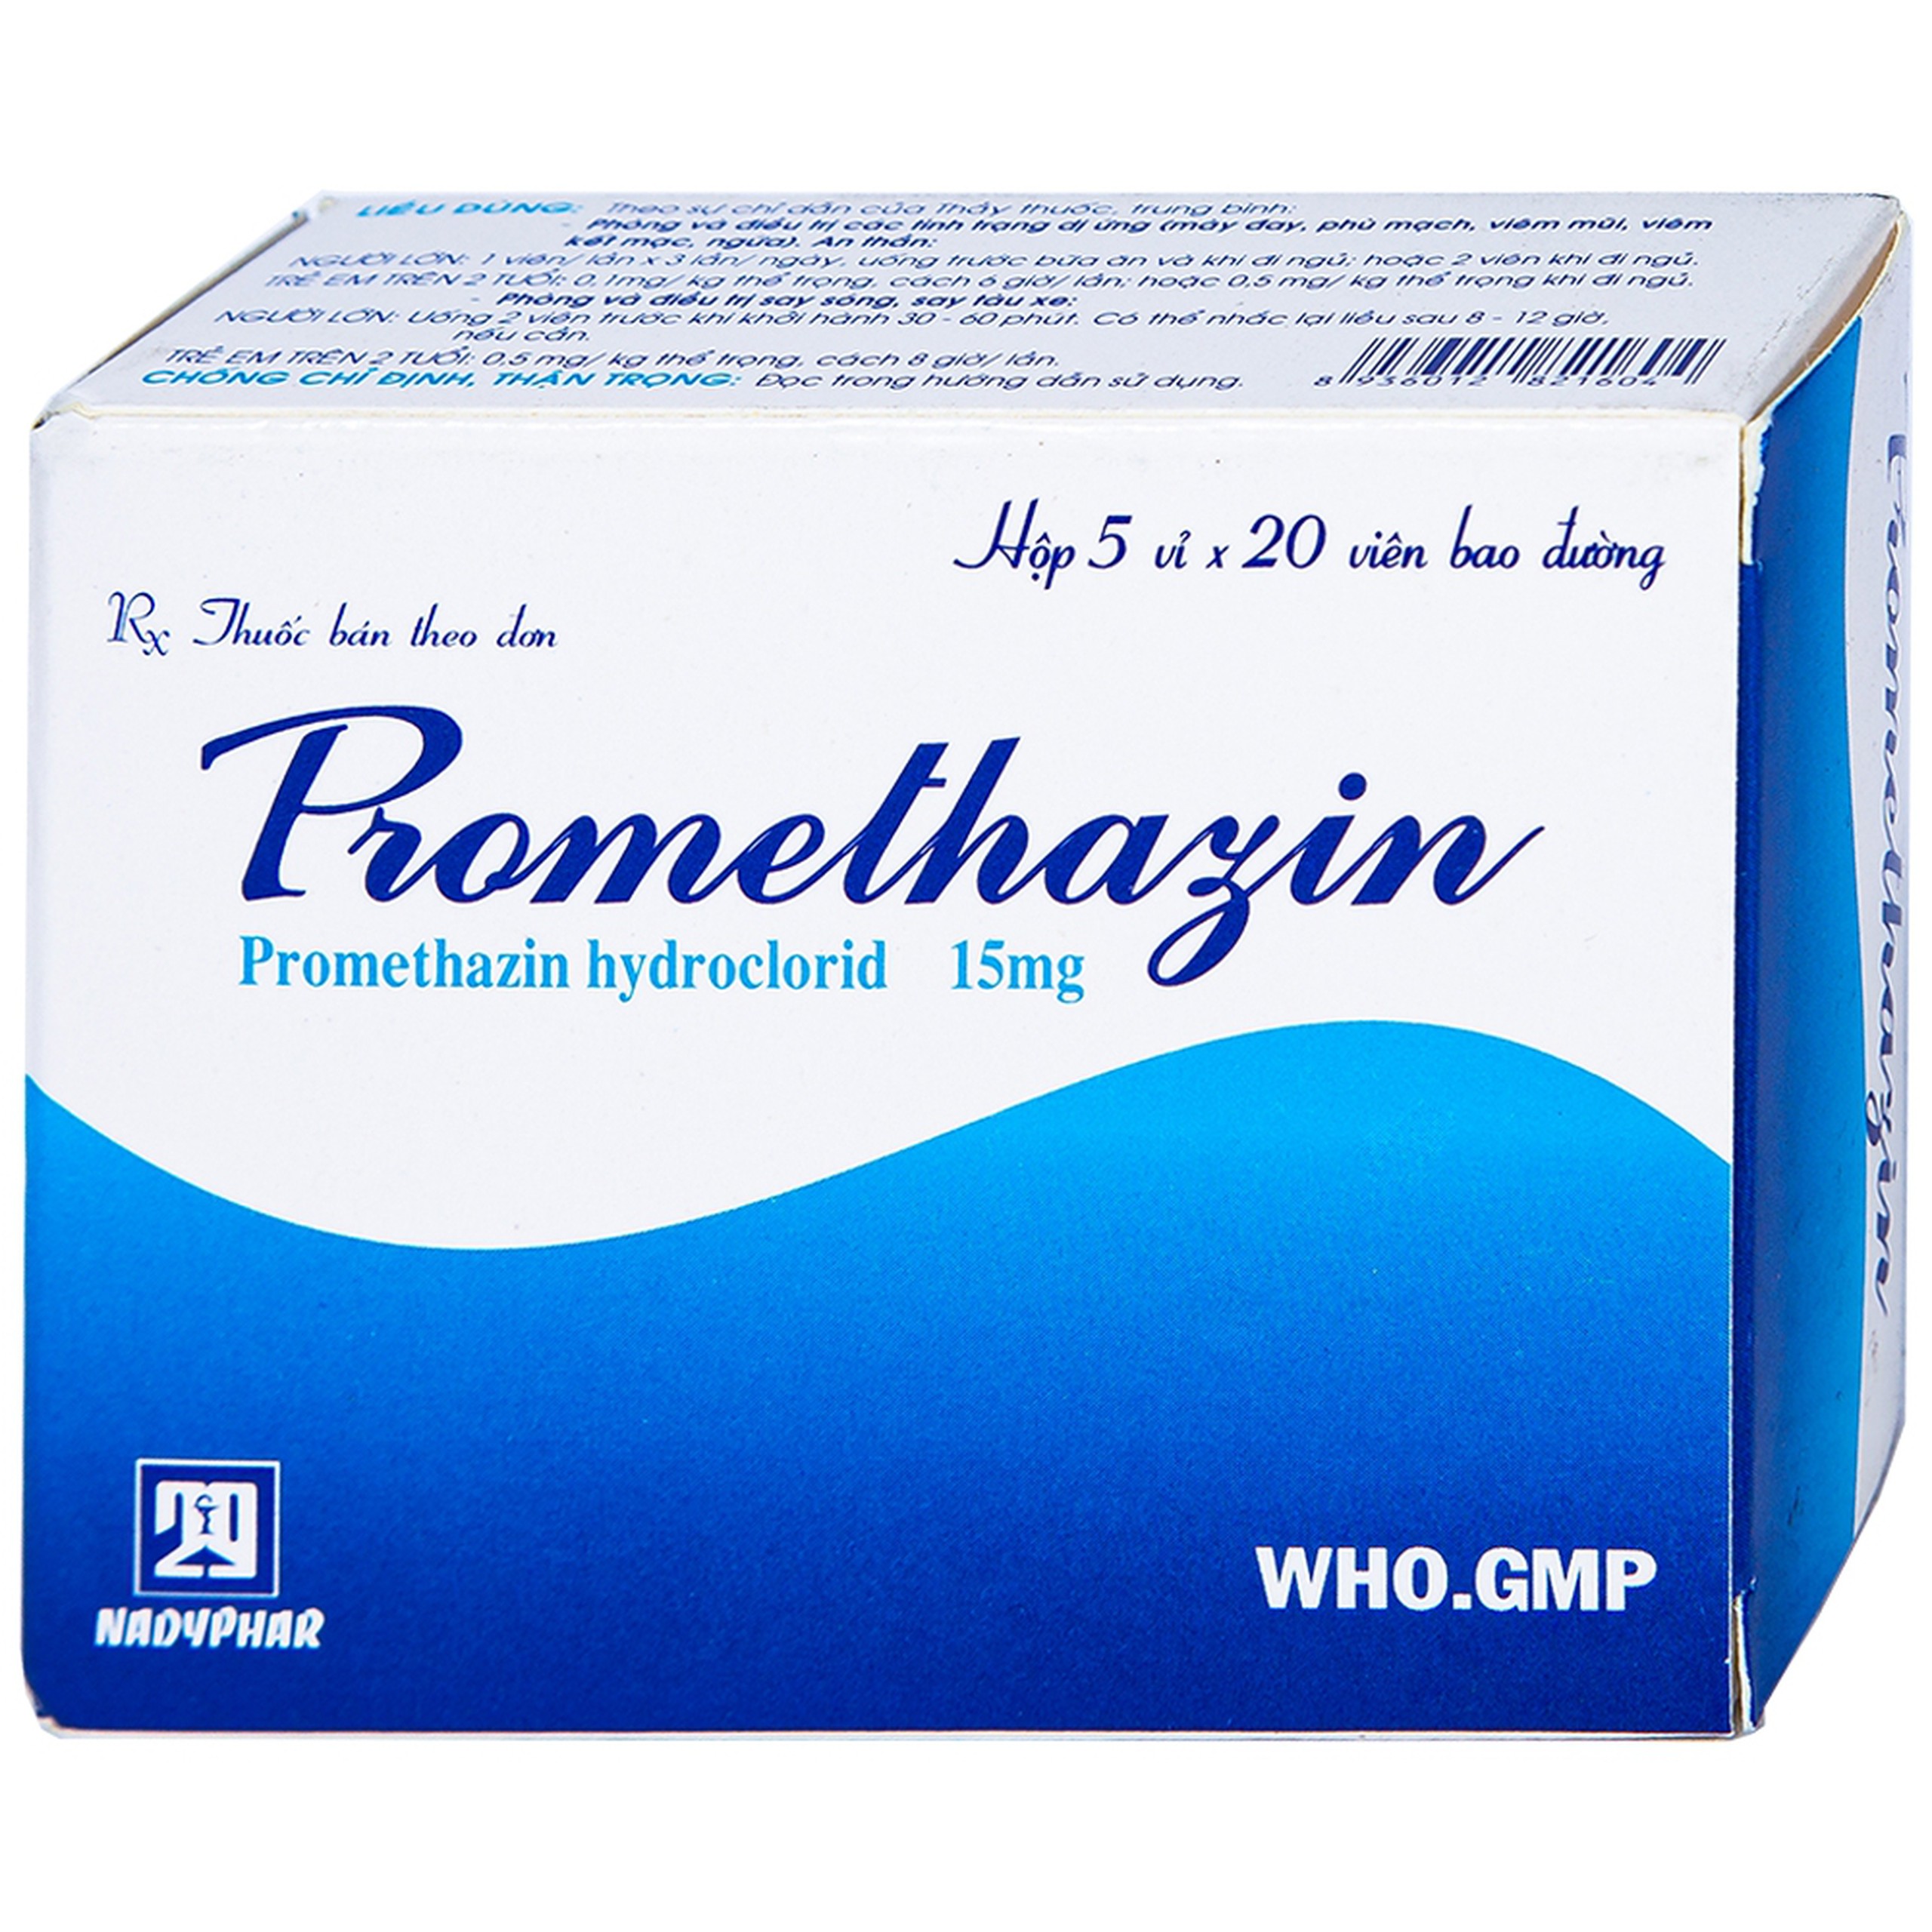 Thuốc Promethazin 15mg Nadyphar phòng và điều trị các tình trạng dị ứng, chống nôn (5 vỉ x 20 viên)  